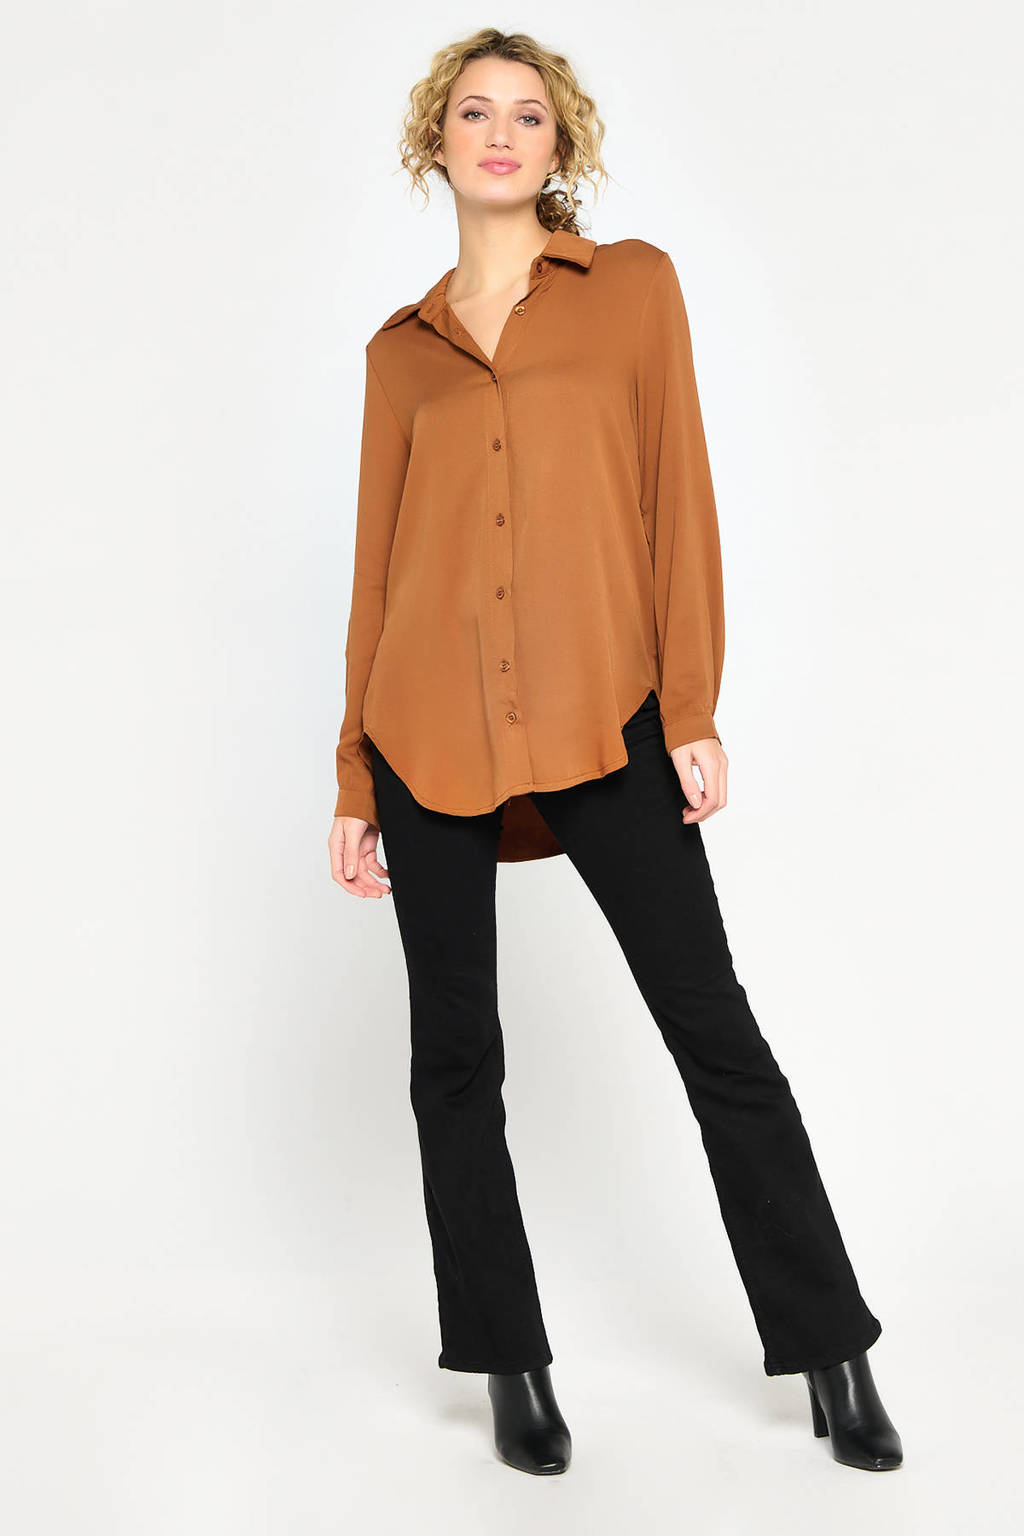 Camelkleurige dames LOLALIZA blouse van viscose met lange mouwen, klassieke kraag en knoopsluiting